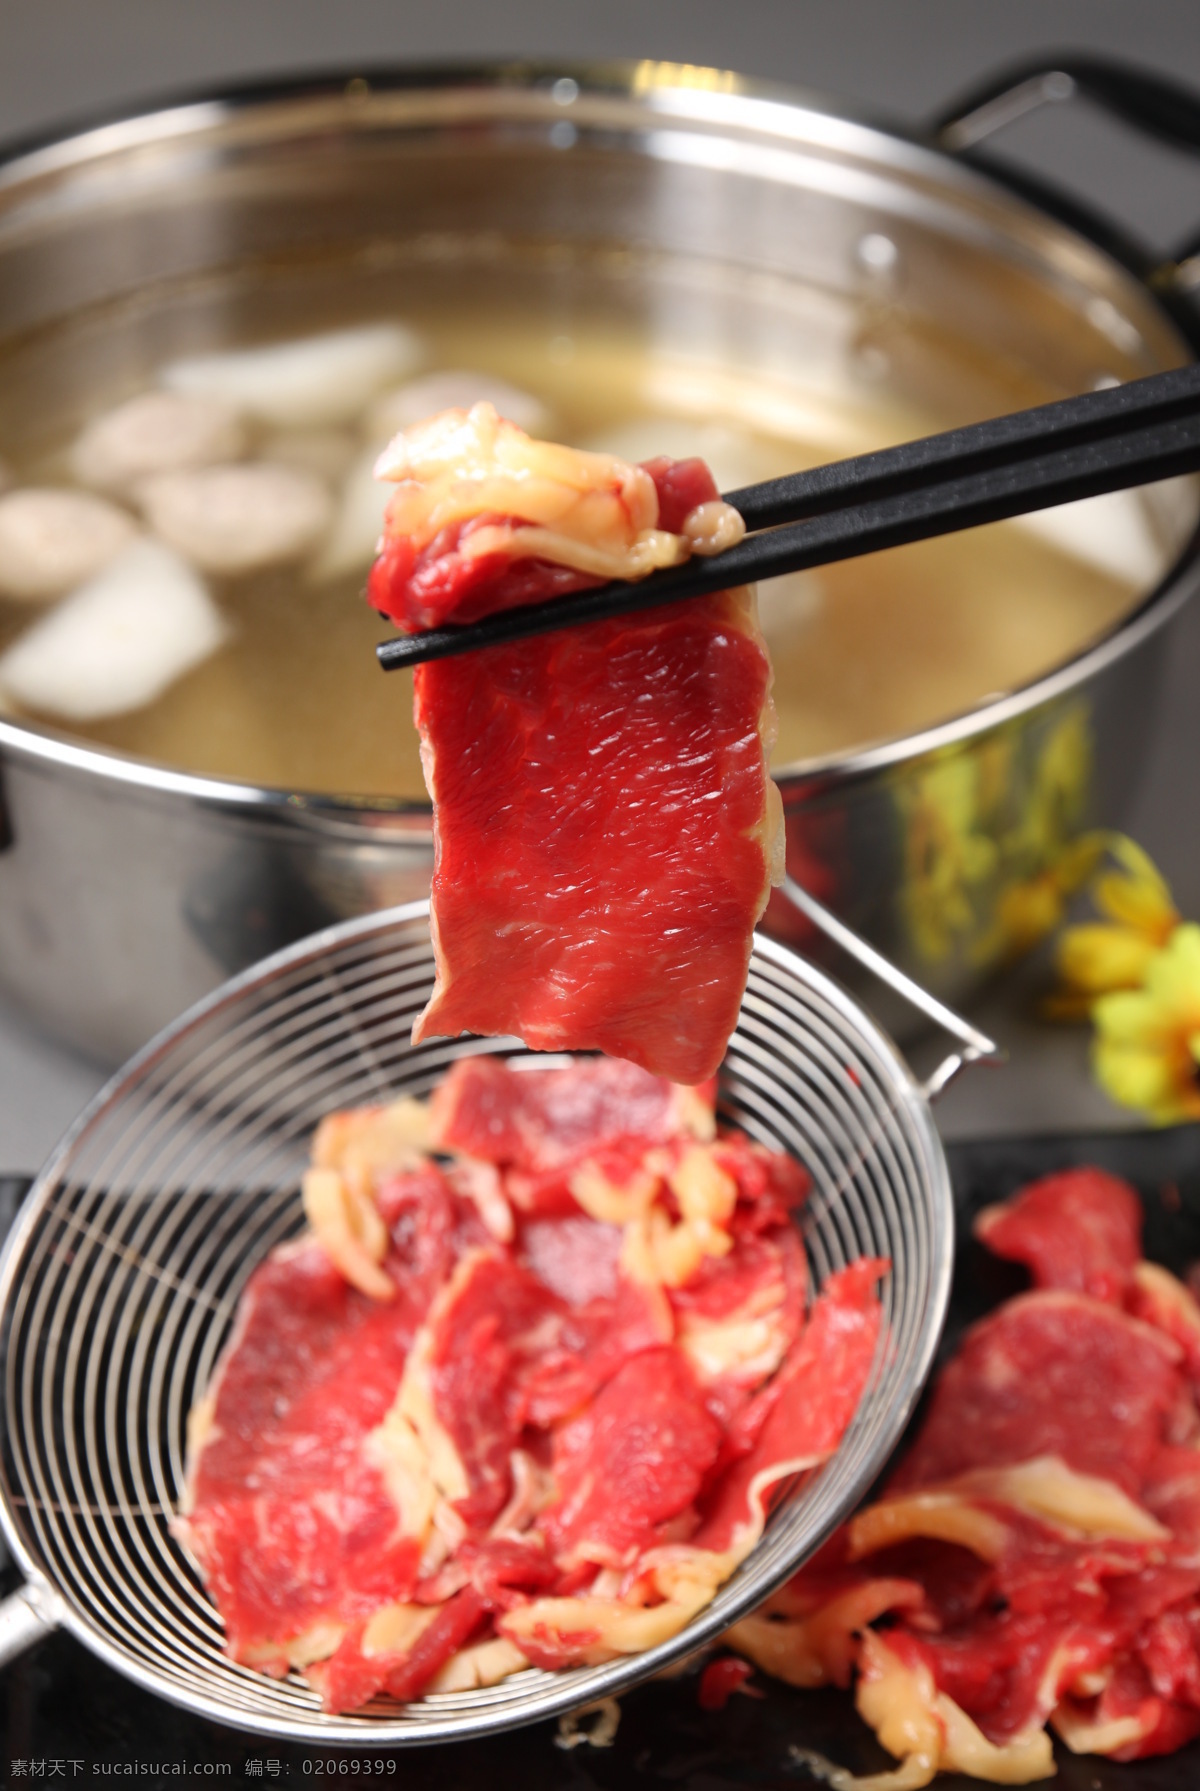 鲜牛肉火锅 鲜切牛肉 潮汕牛肉火锅 鲜牛肉 牛肉 餐饮 餐饮美食 传统美食